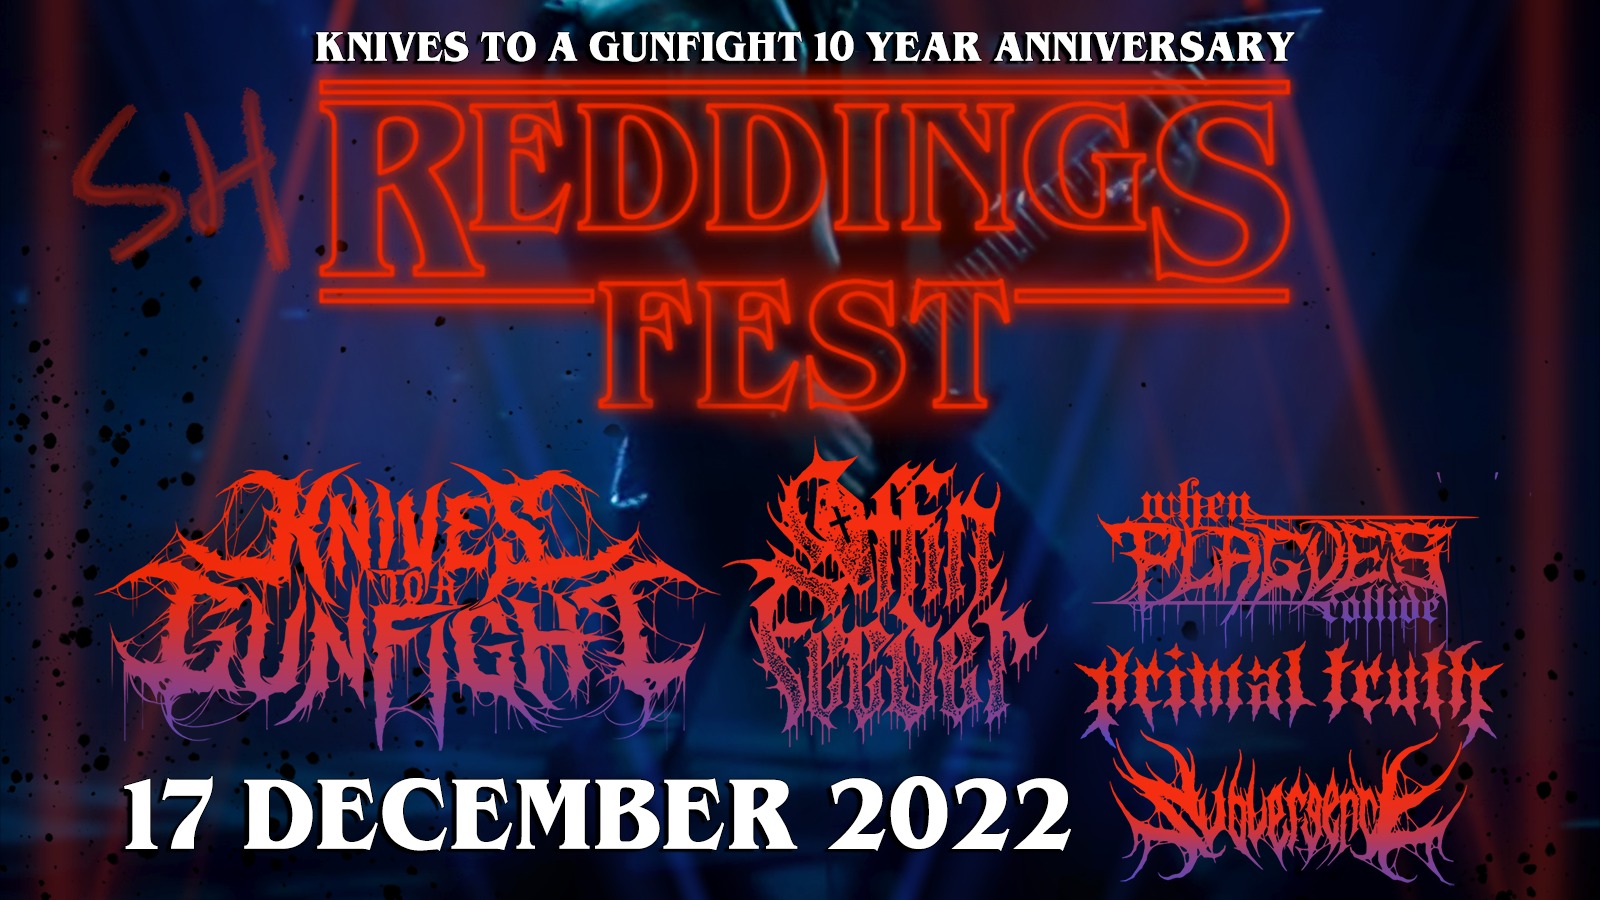 Reddingsfest 2022